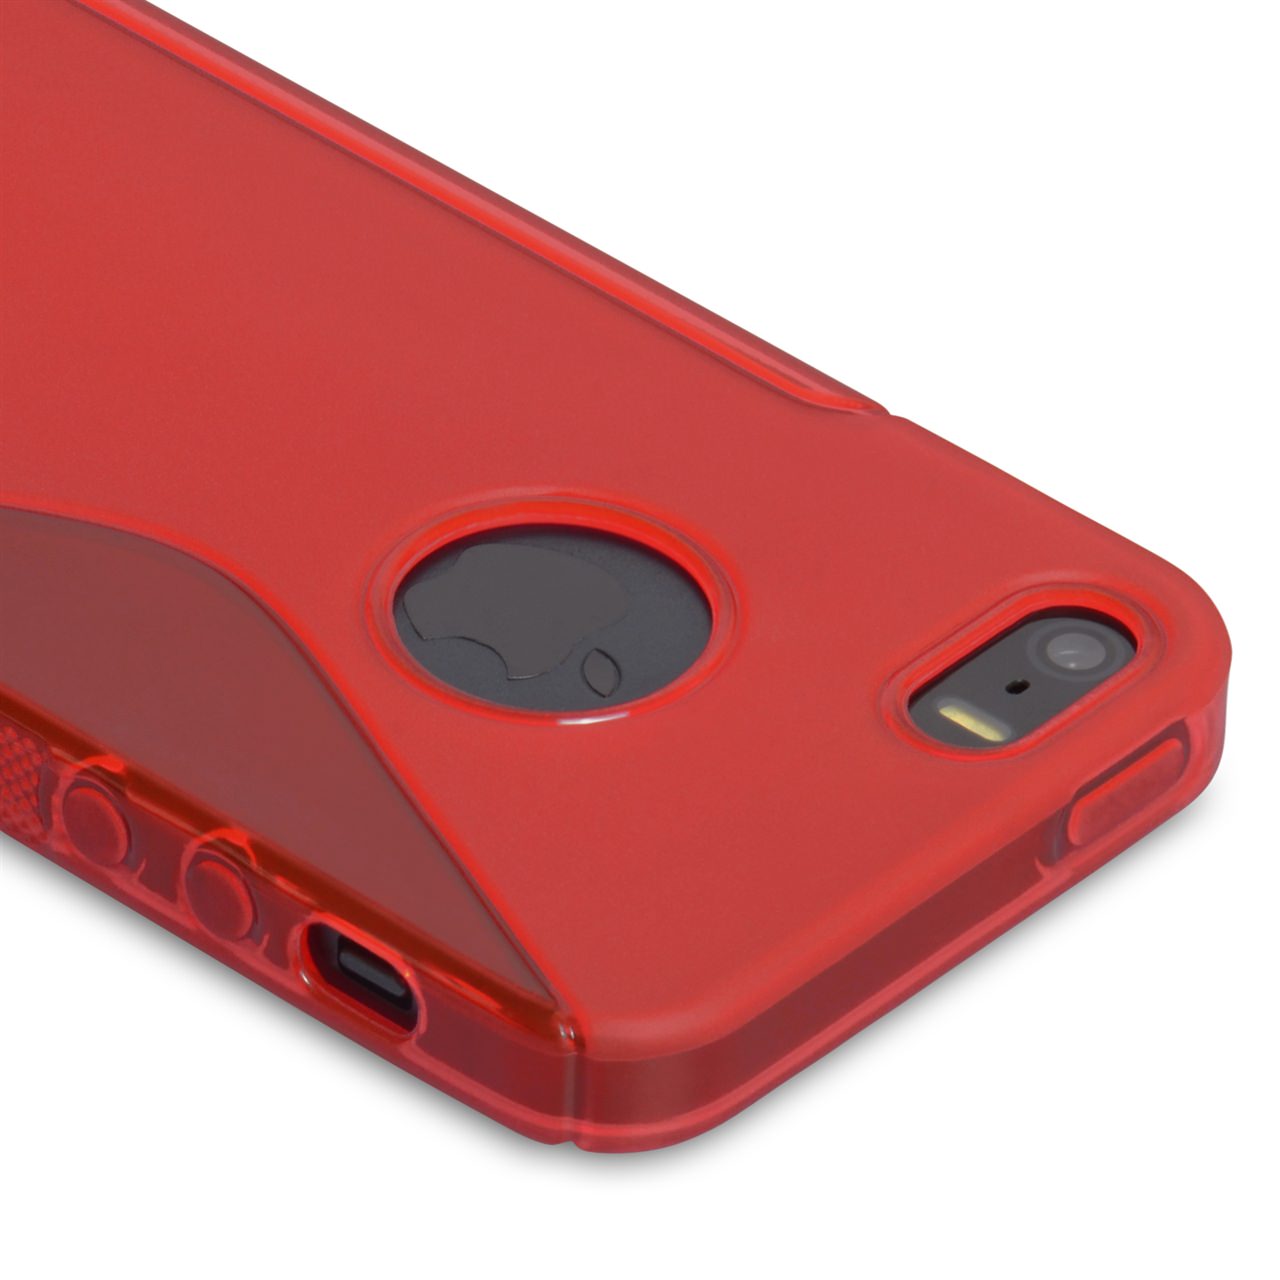 Caseflex iPhone 5 / 5S S-Line Gel Case - Red